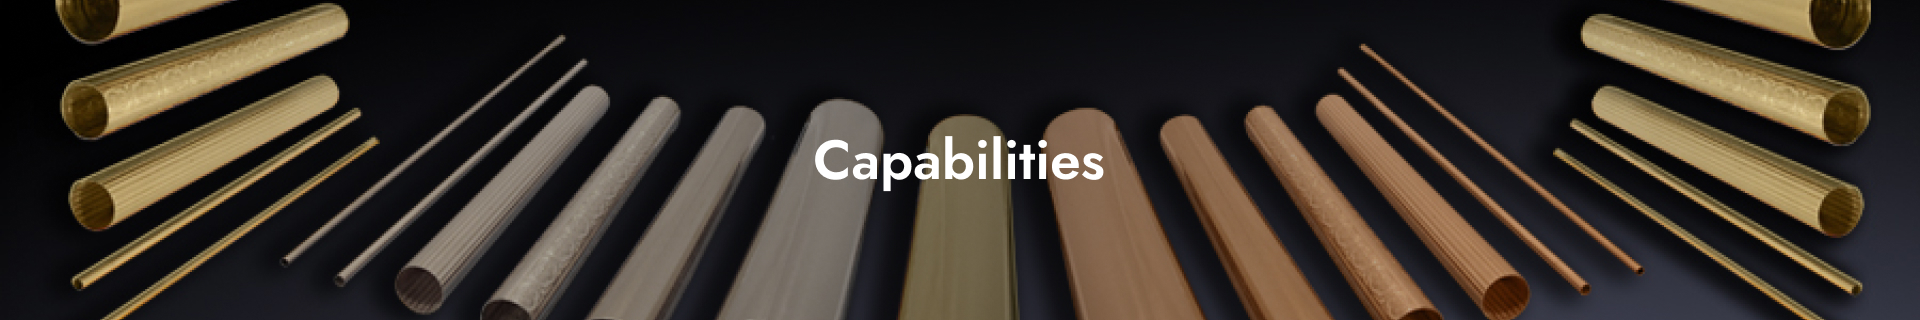 capabilities_banner